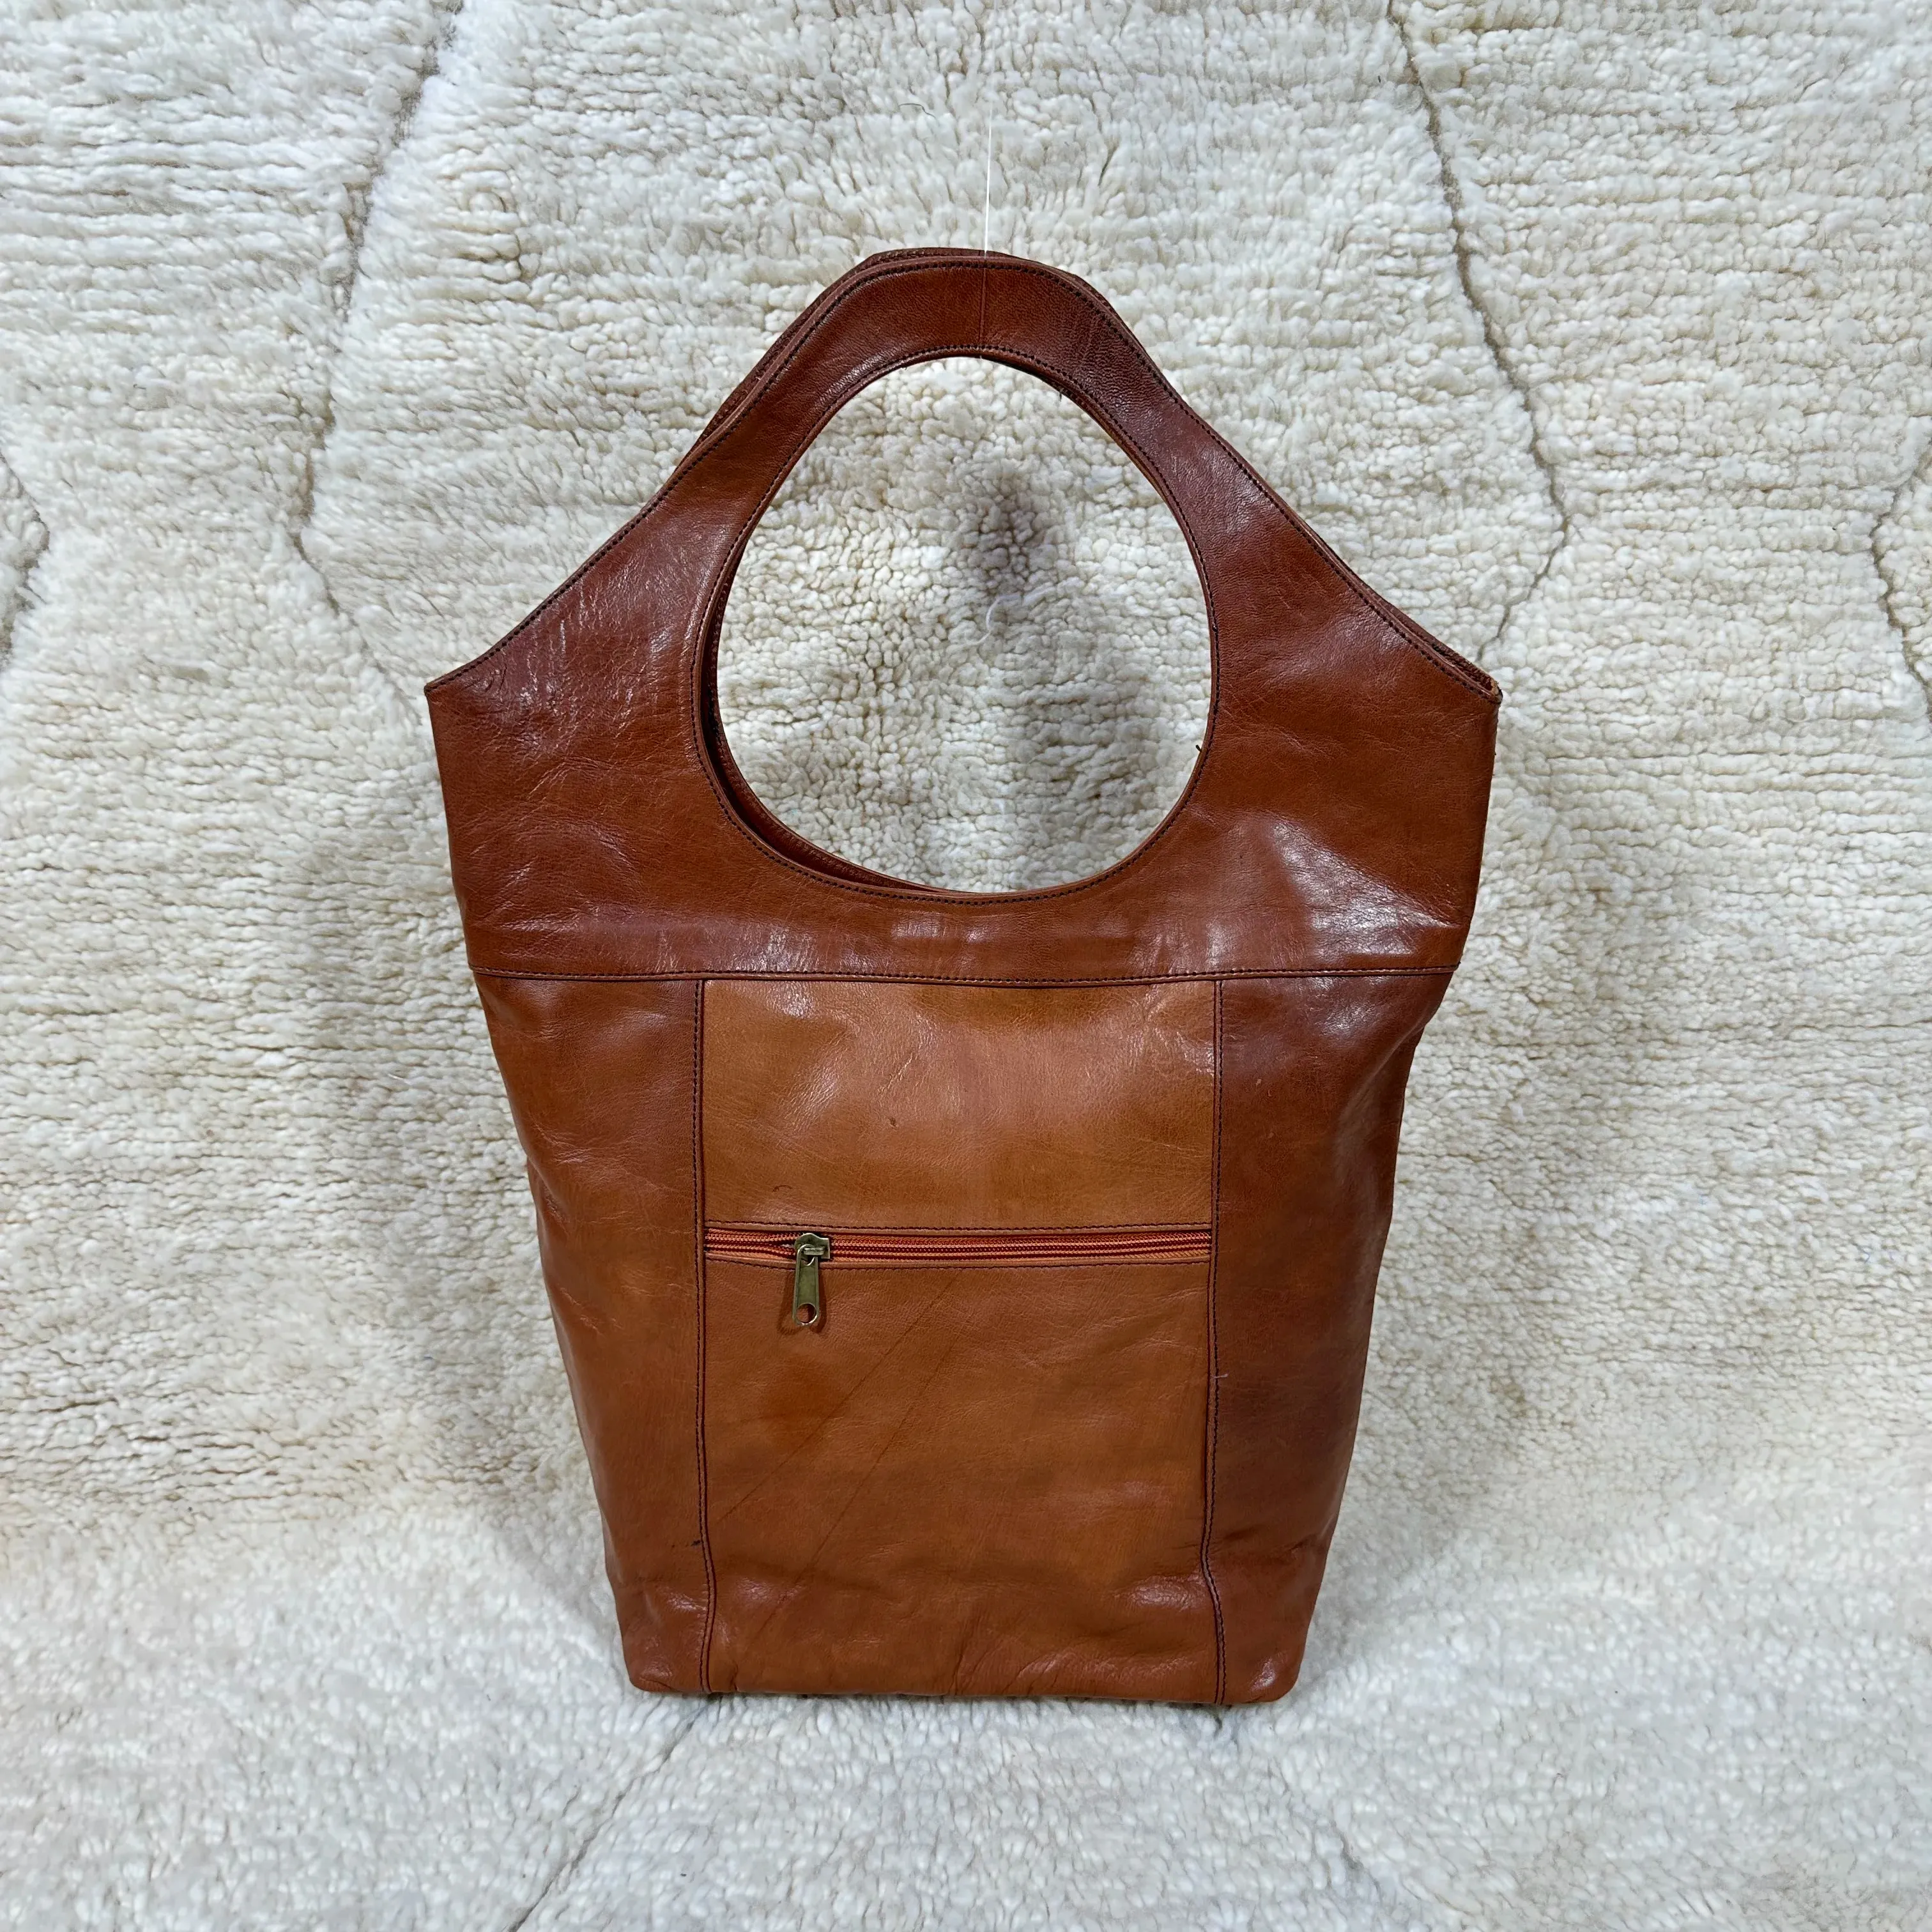 Tasarımcı hakiki pürüzsüz deri Tote çanta fas hakiki deri omuzdan askili çanta bayanlar çanta için düşük fiyata